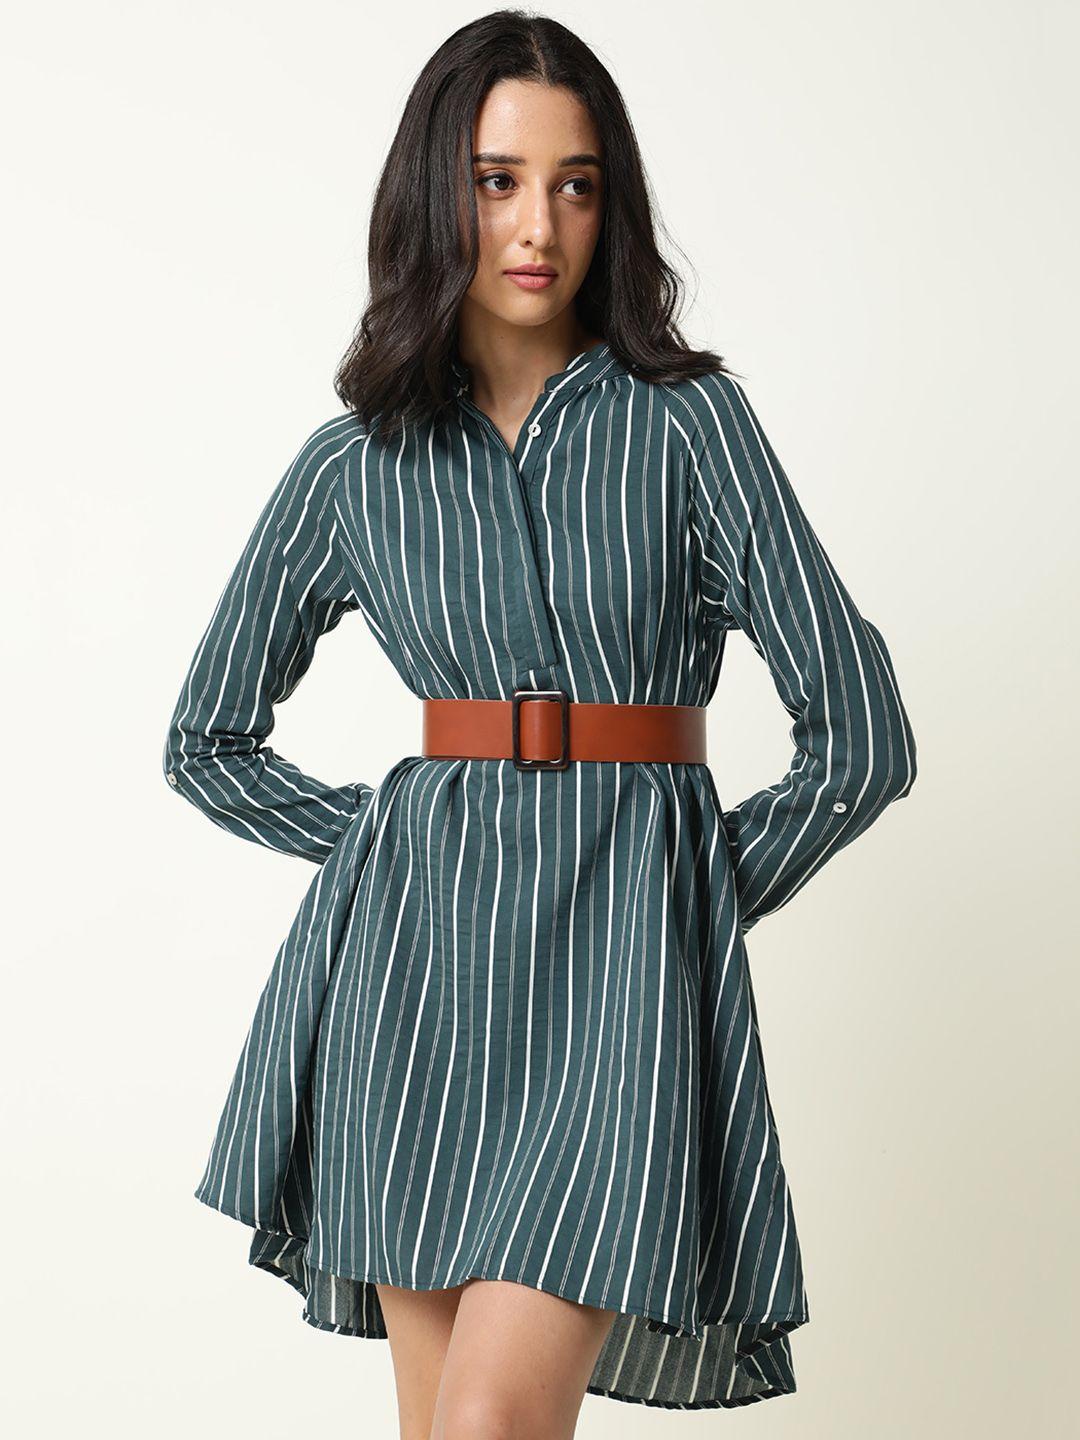 rareism-green-striped-shirt-dress